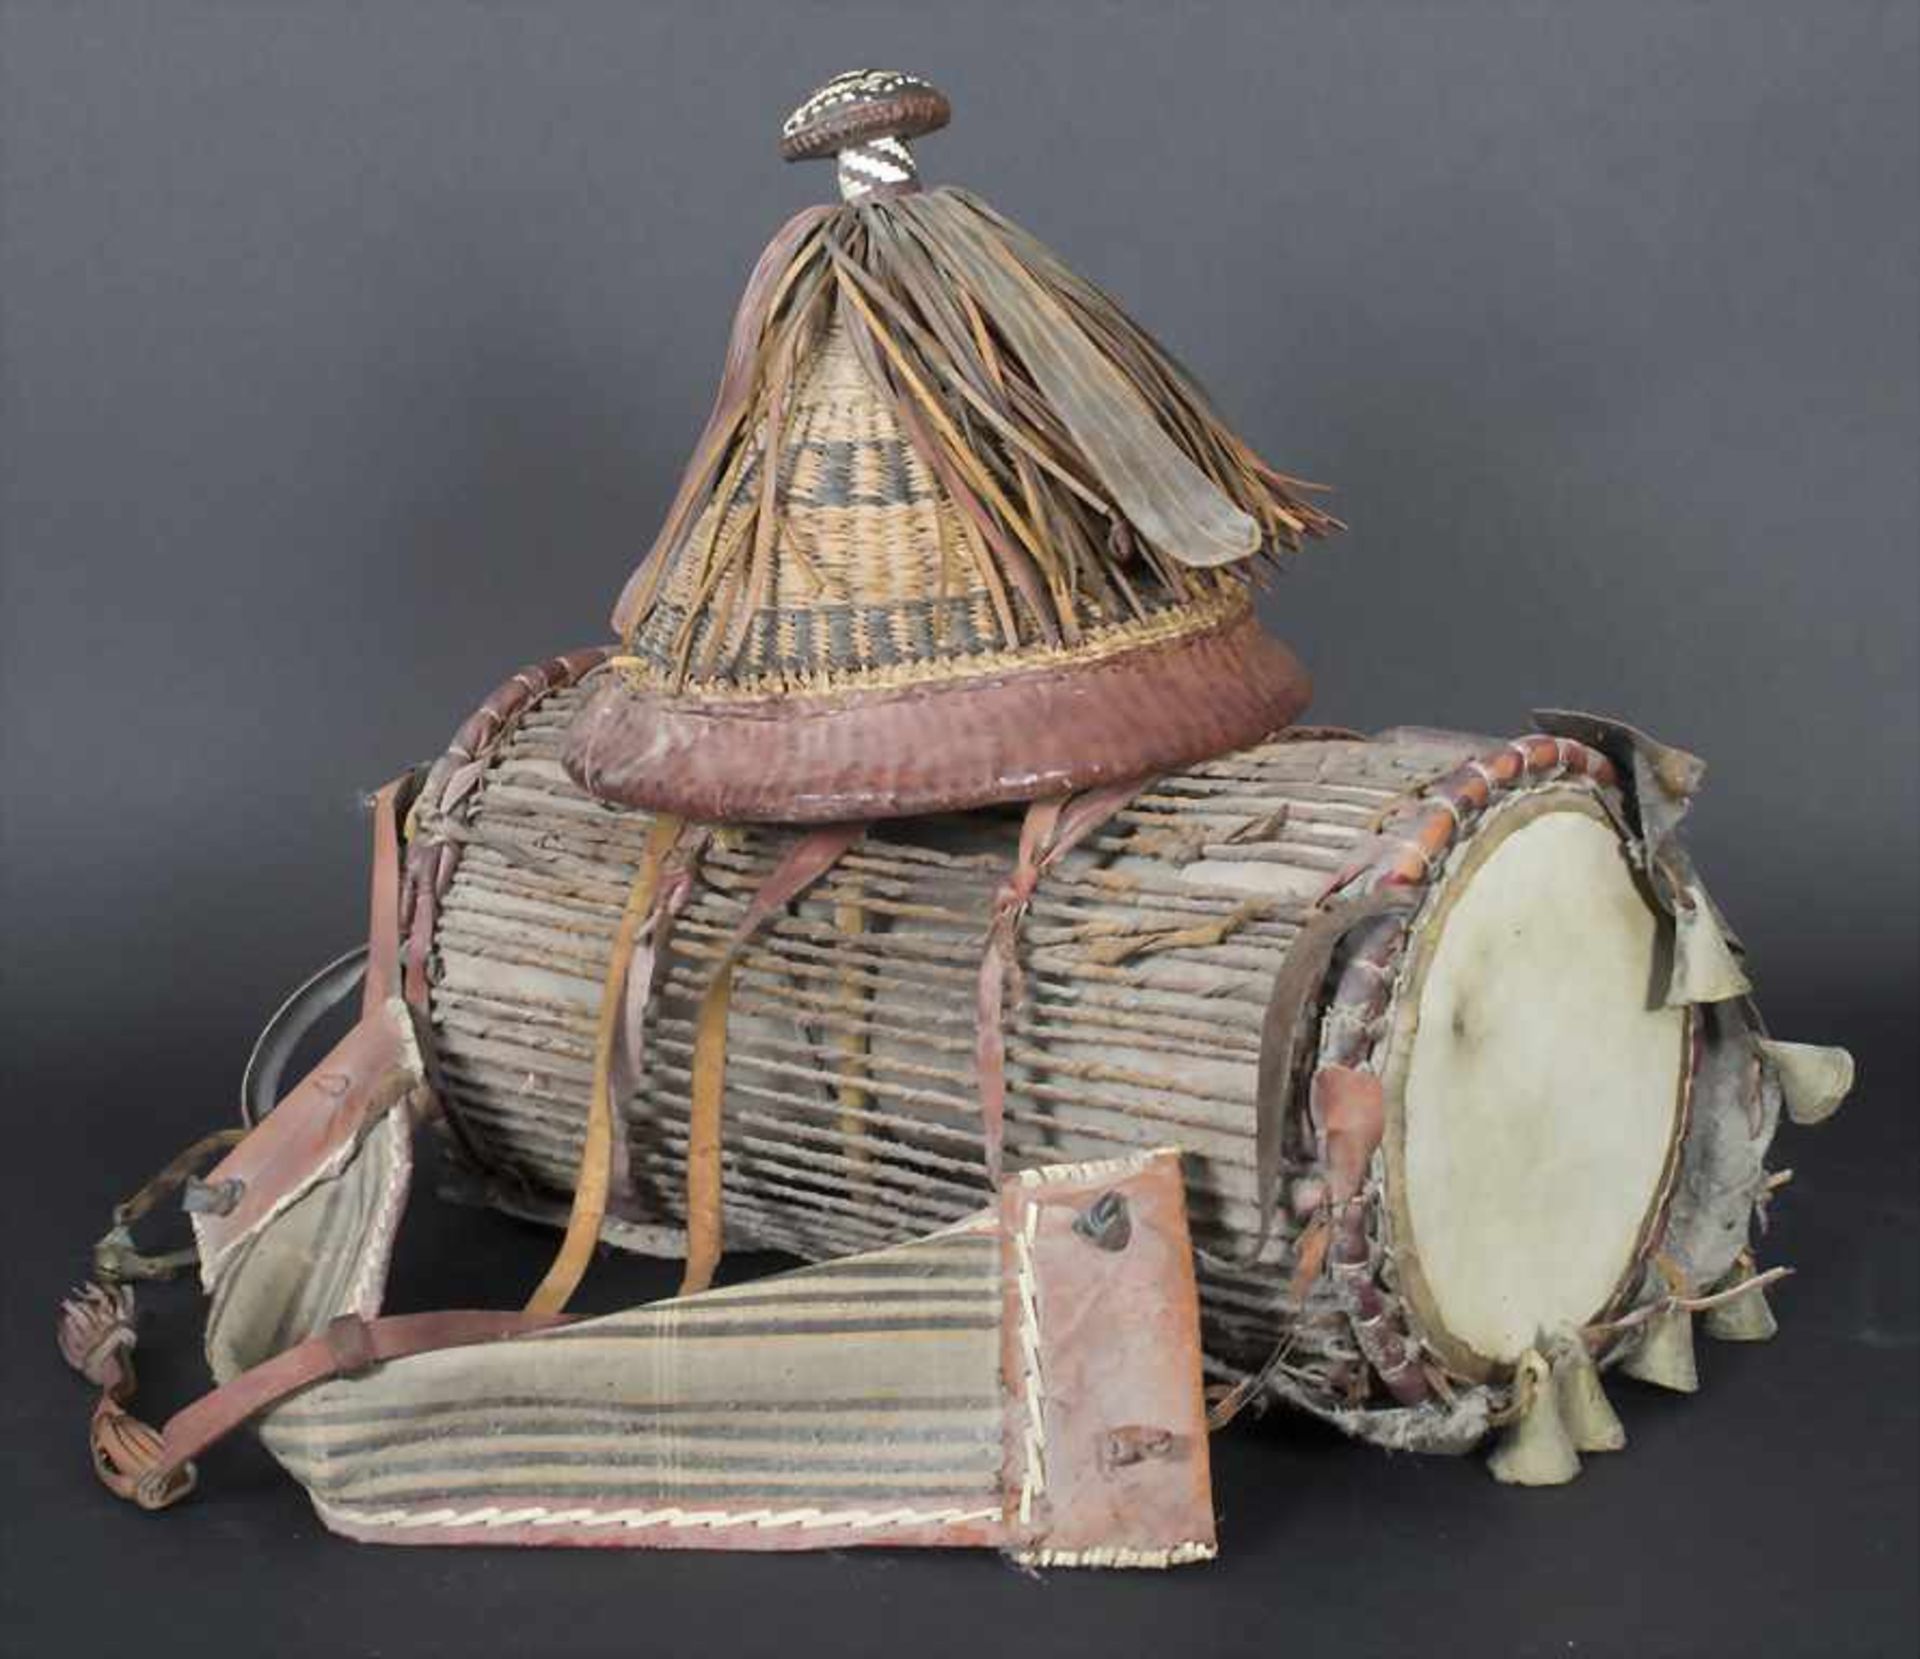 Trommel und Hut, WestafrikaMaterial: Leder, Planzenfaser, Stoff, Holz, Messing-Glocken,Maße: Trommel - Bild 2 aus 2